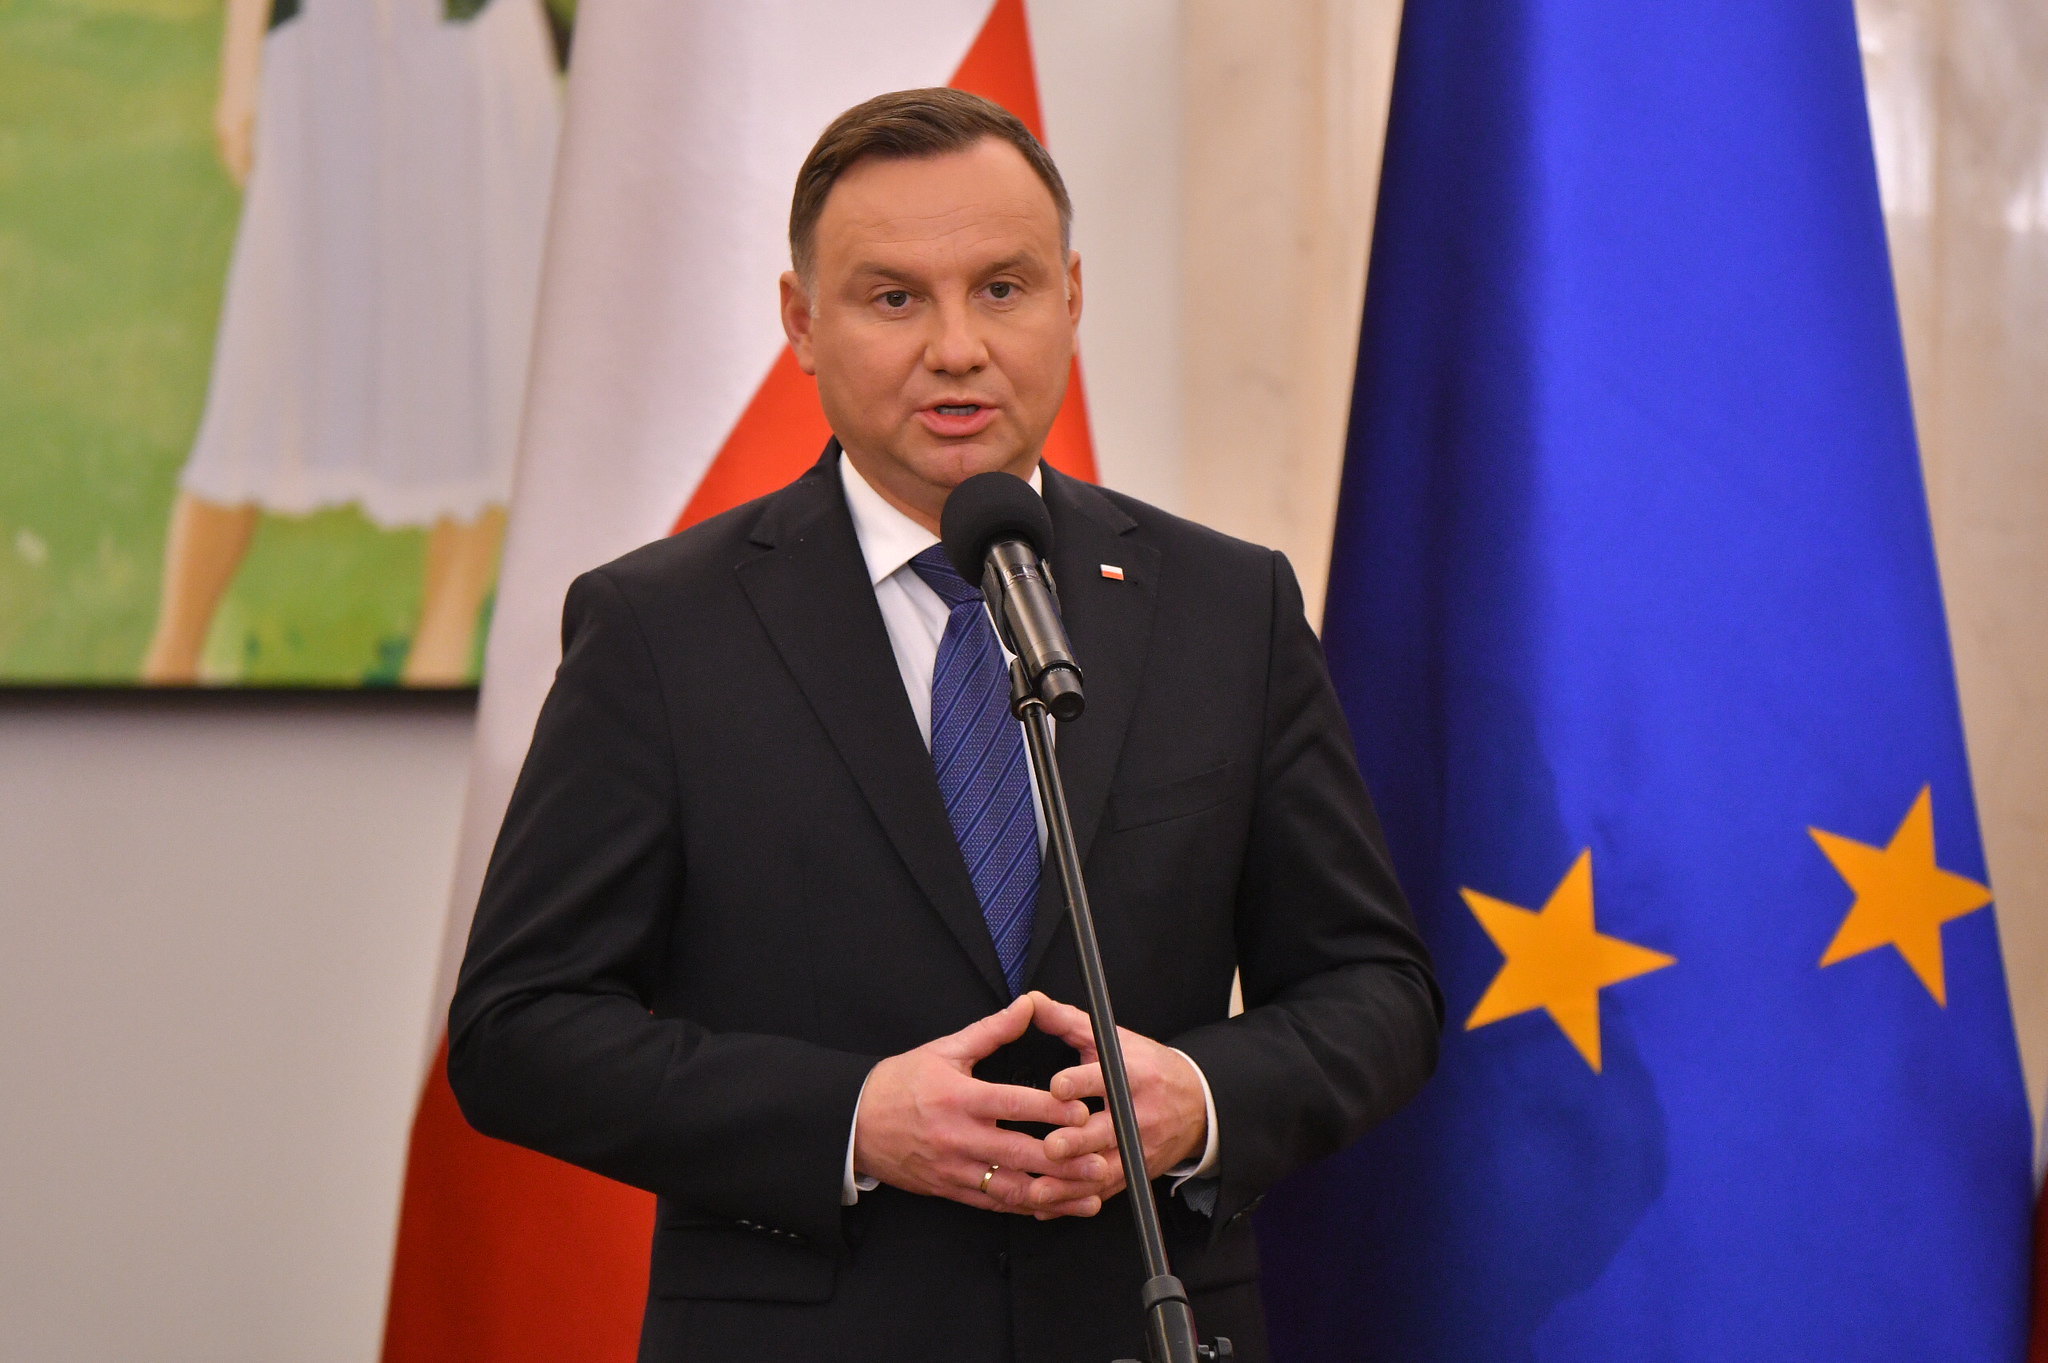 Uroczystość desygnowania Mateusza Morawieckiego na Prezesa Rady Ministrów , listopad 2019